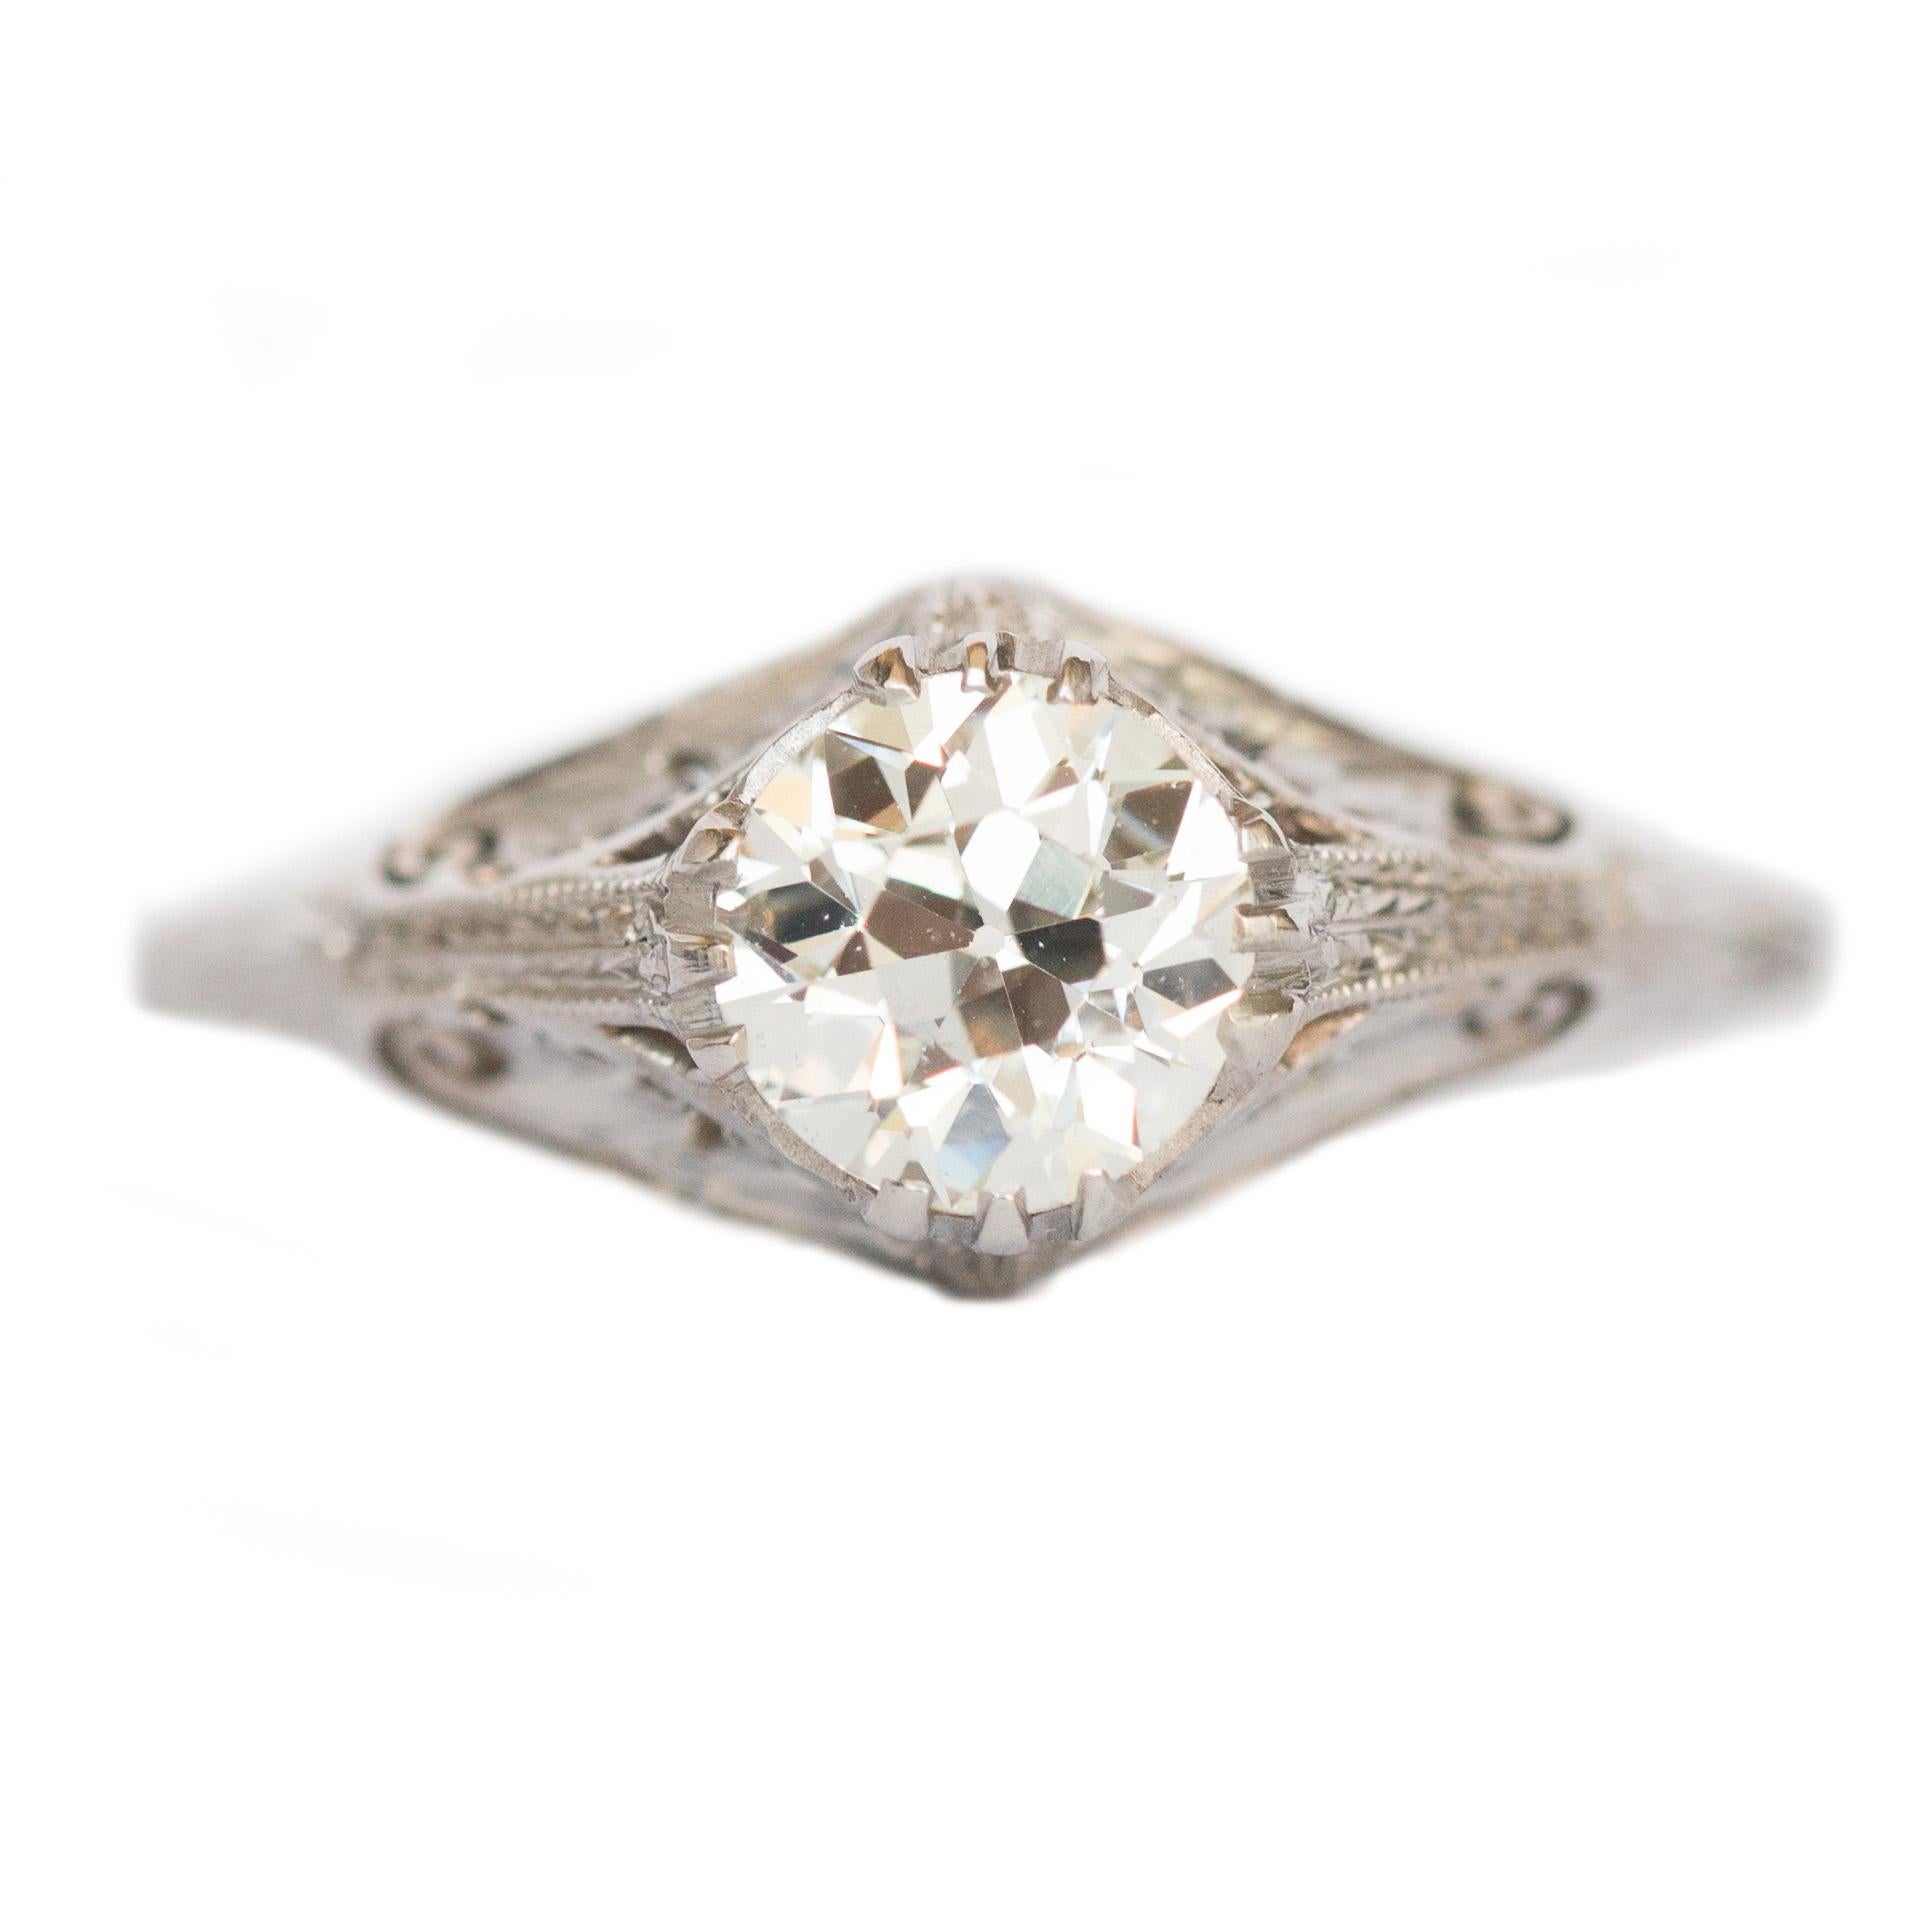 GIA Certified 1.16 Carat Diamond Platinum Engagement Ring